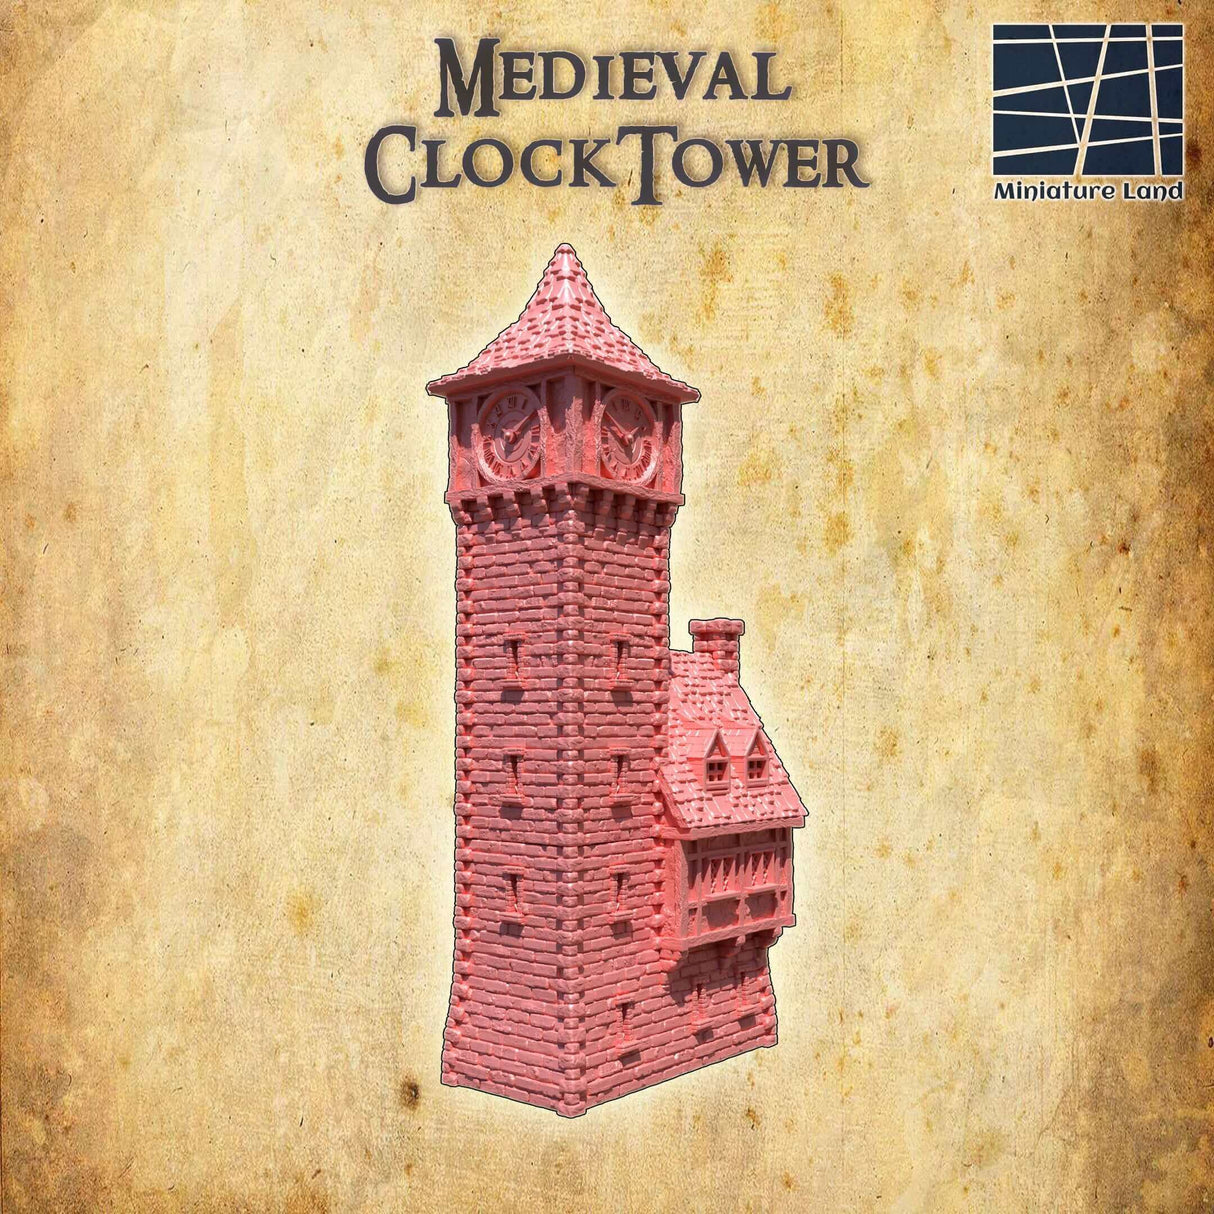 Kunstvoller mittelalterlicher Uhr Turm für Tabletop-Spiele